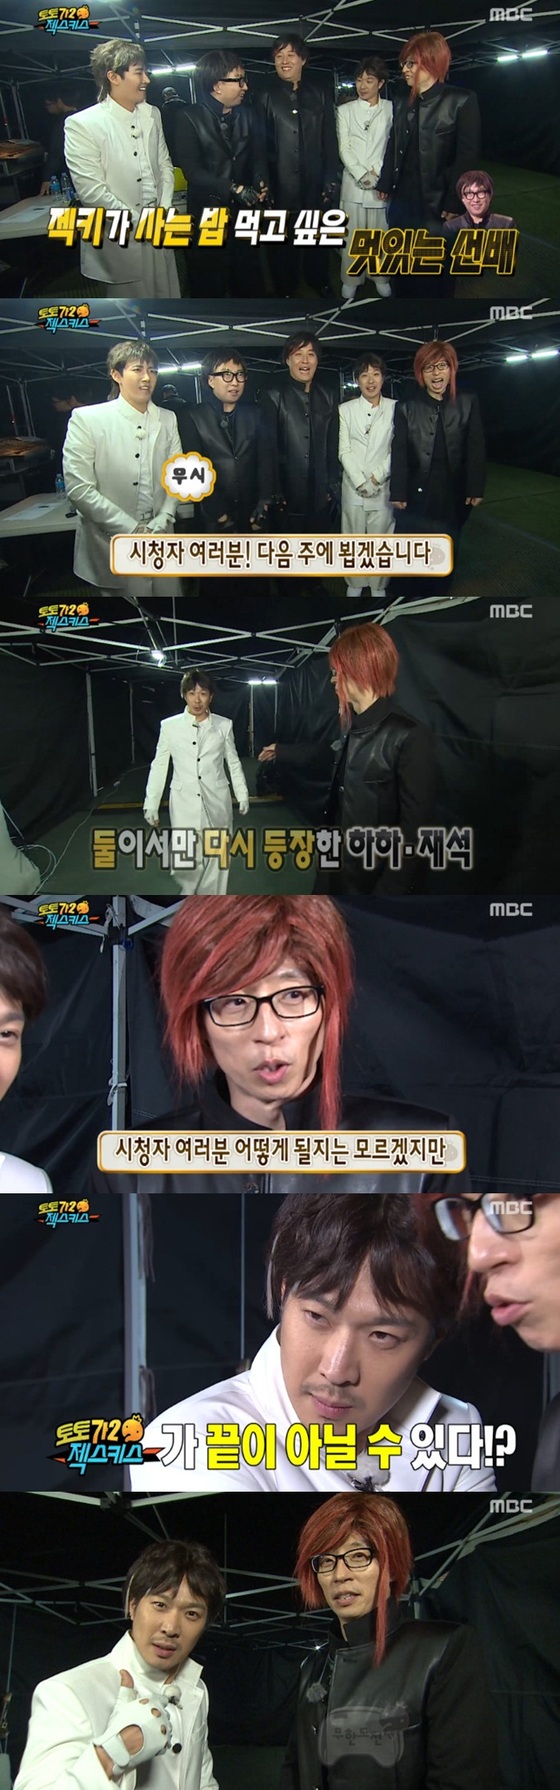 유재석과 하하가 '토토가' 시즌3를 언급했다. ⓒ News1star / MBC '무한도전' 캡처